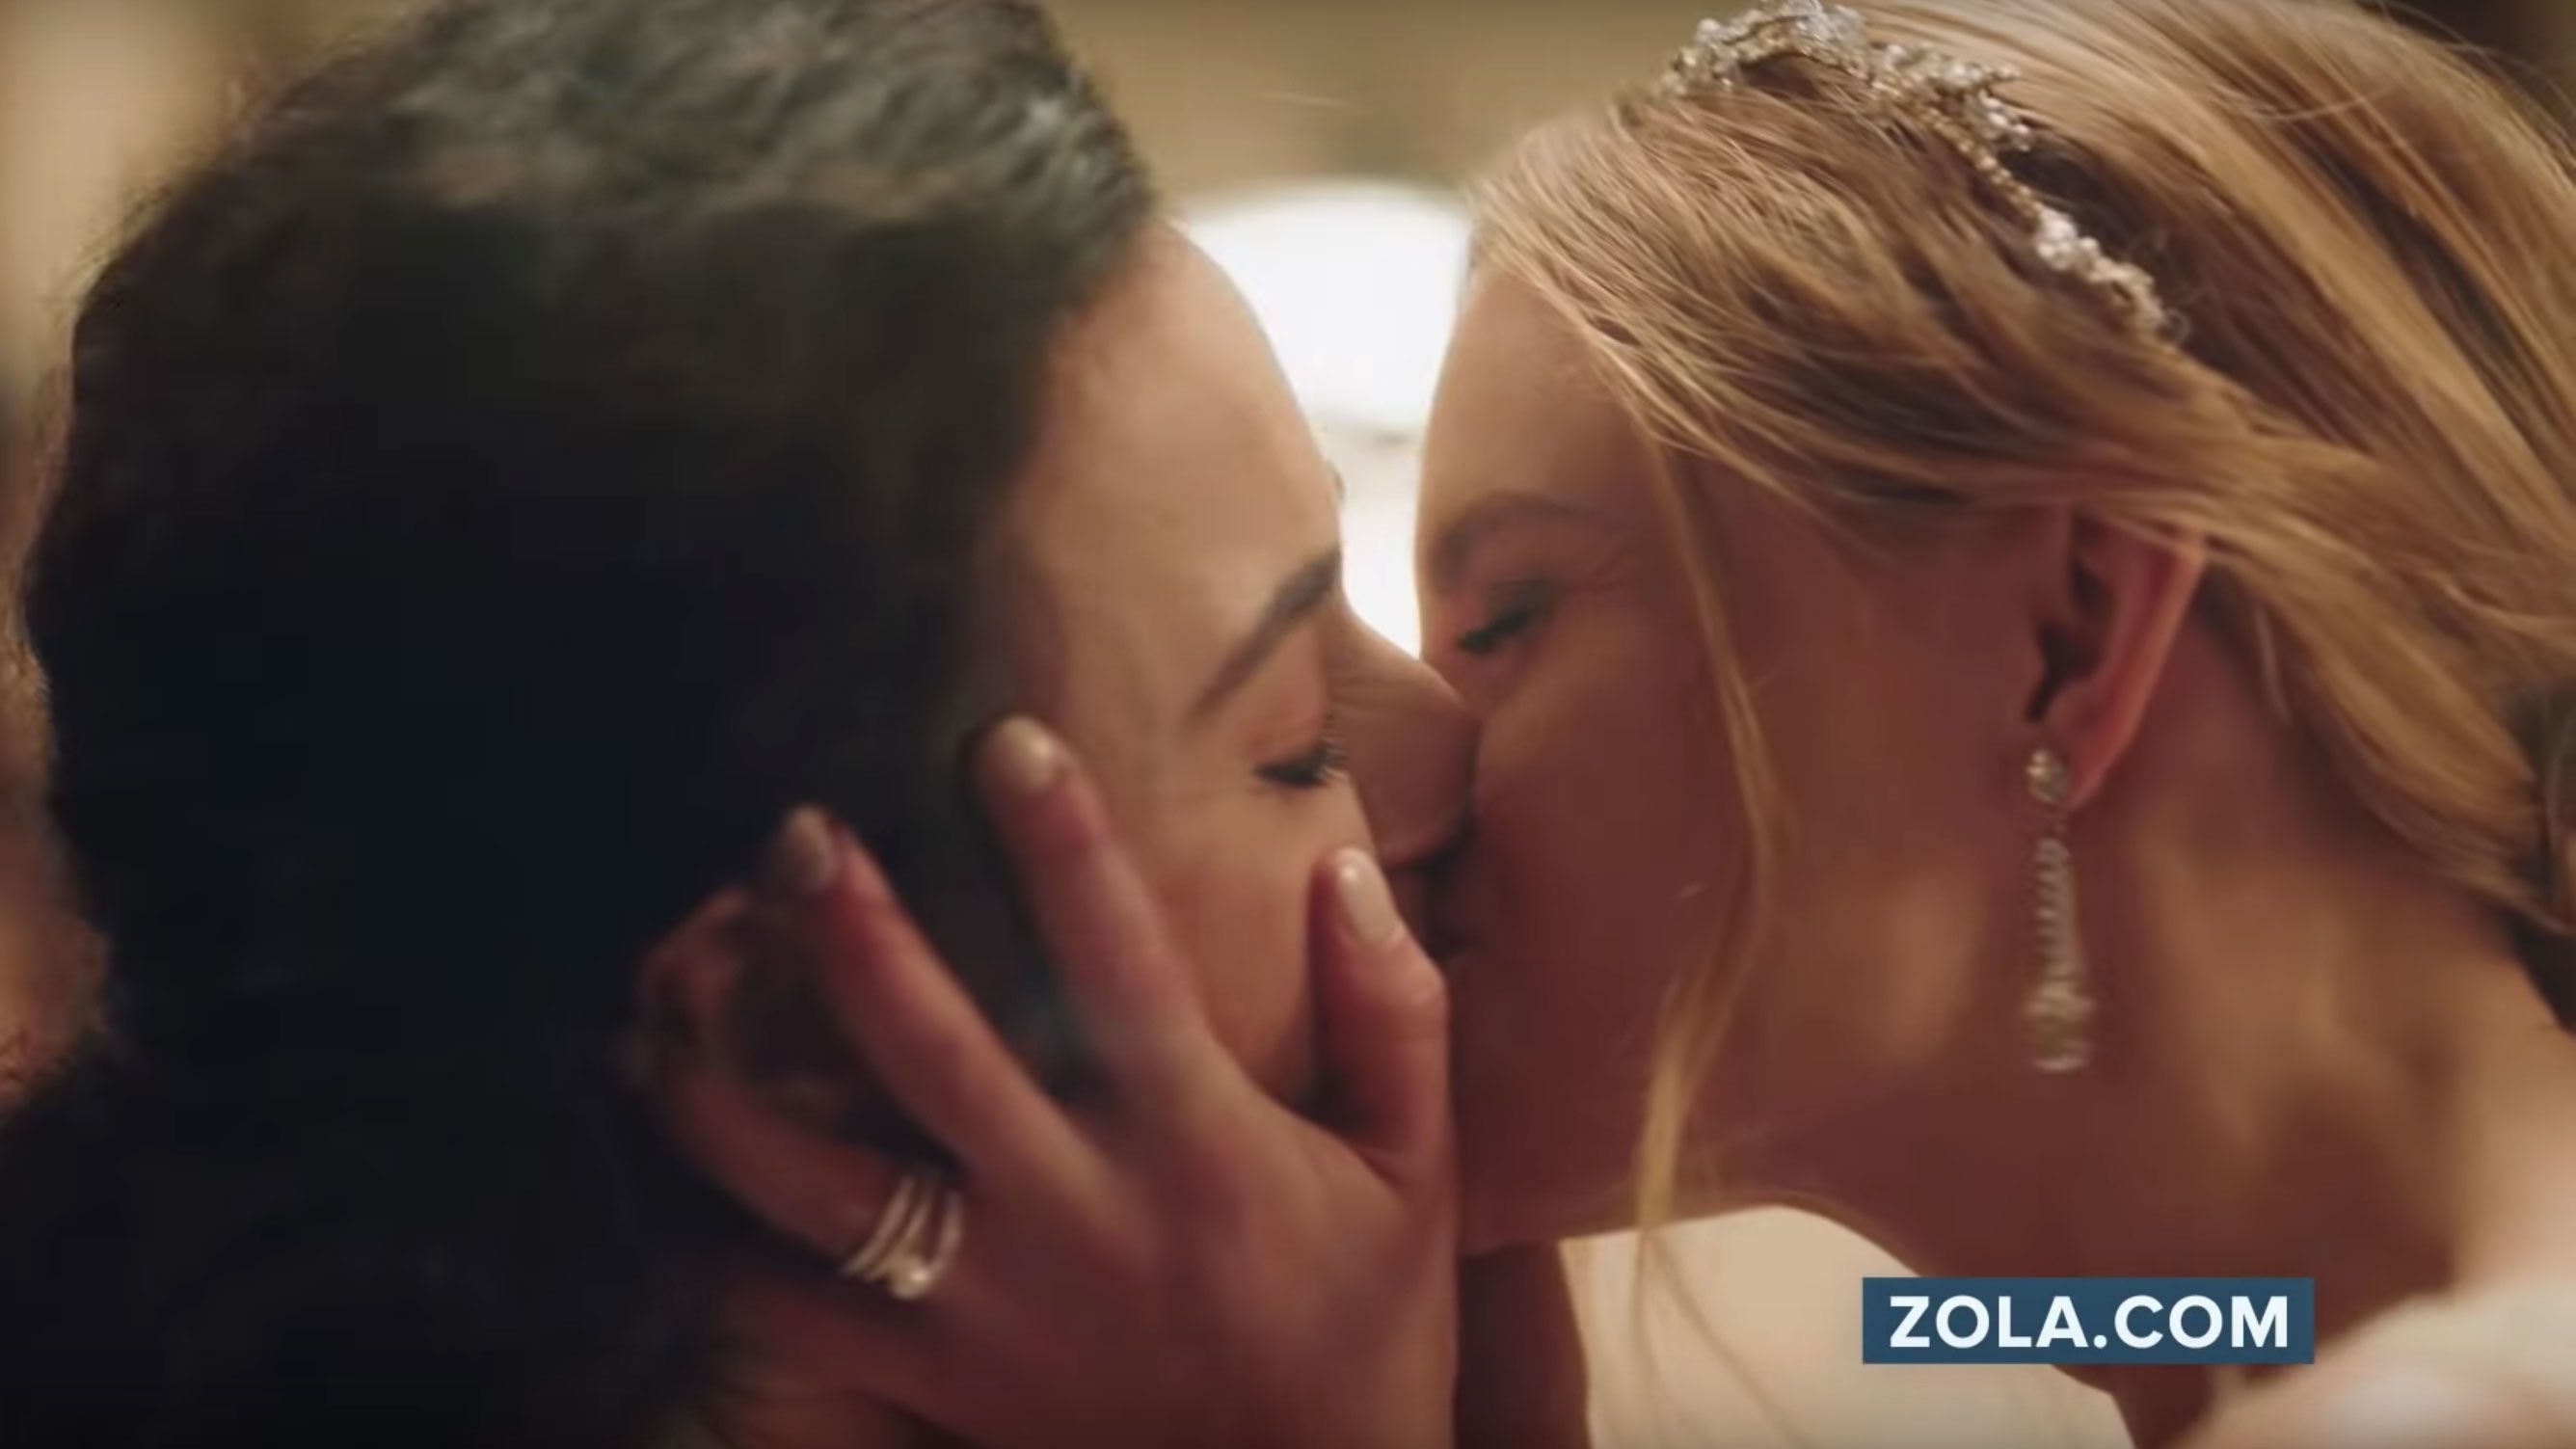 Forcedly Lesbian - Hallmark Channel pulls Zola ad showing lesbian wedding | CNN Business